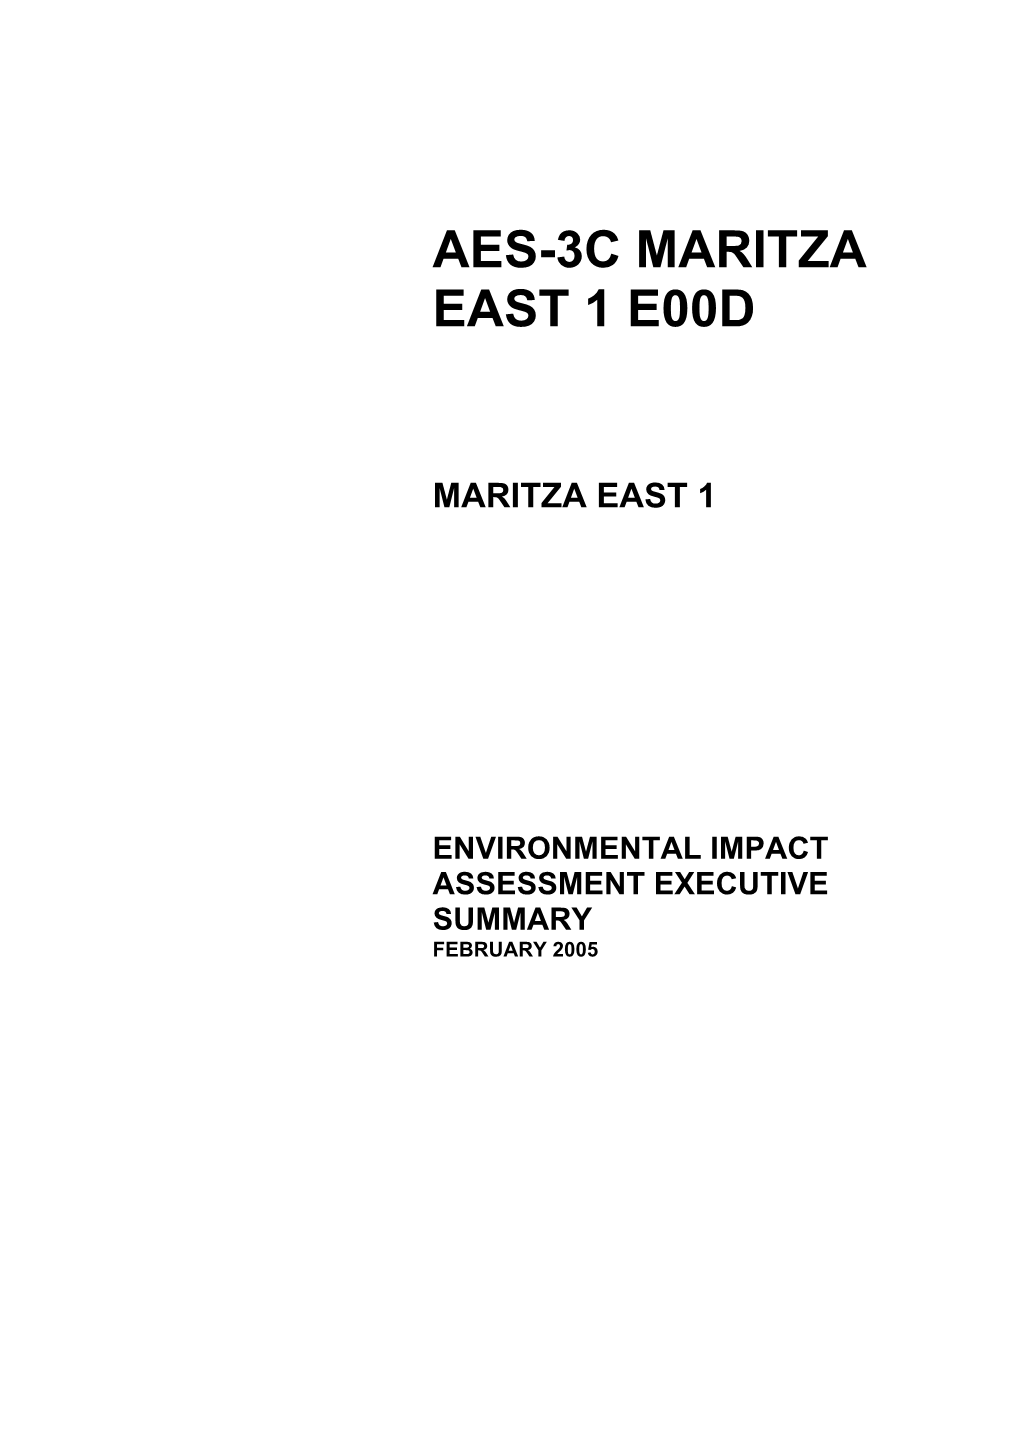 Maritza East 1 [EBRD